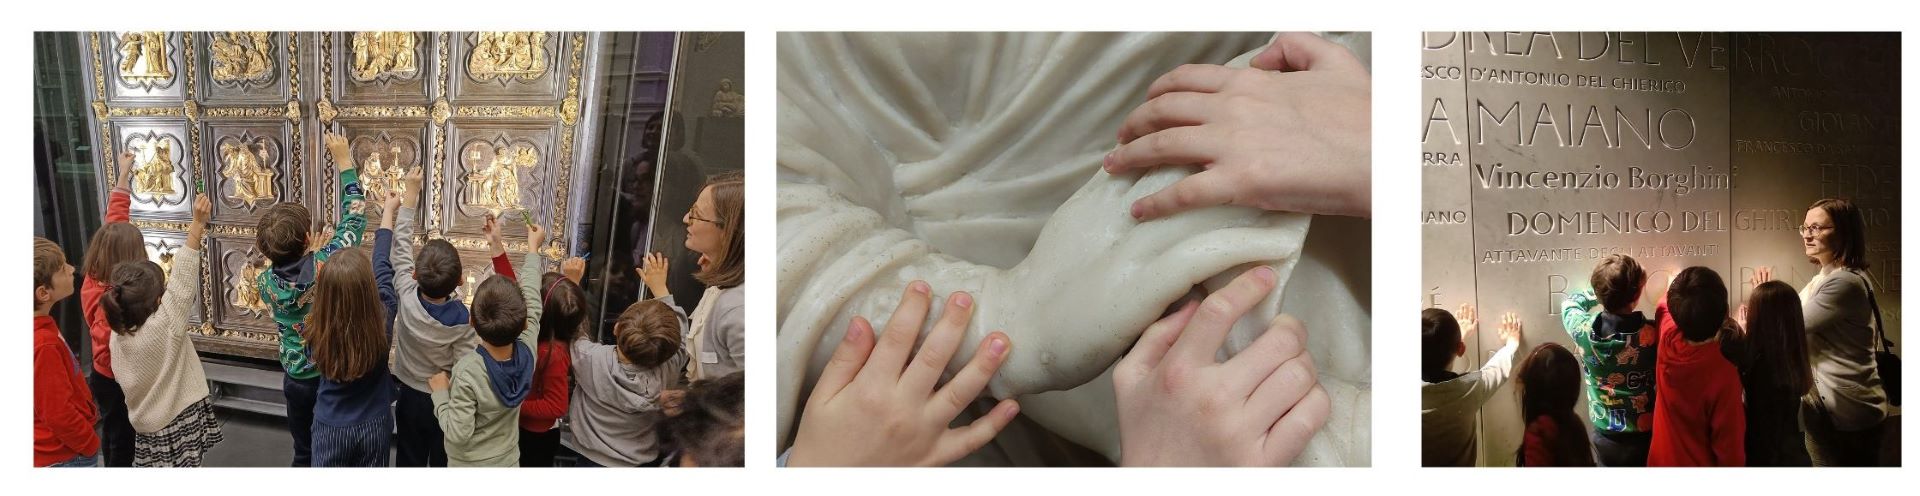 collage di foto di alcuni momenti della nostra visita per bambini e famiglie alla piazza del duomo di Firenze. Il museo dispone di sculture touchable dove i bambini possono toccare le copie delle sculture presenti al museo.